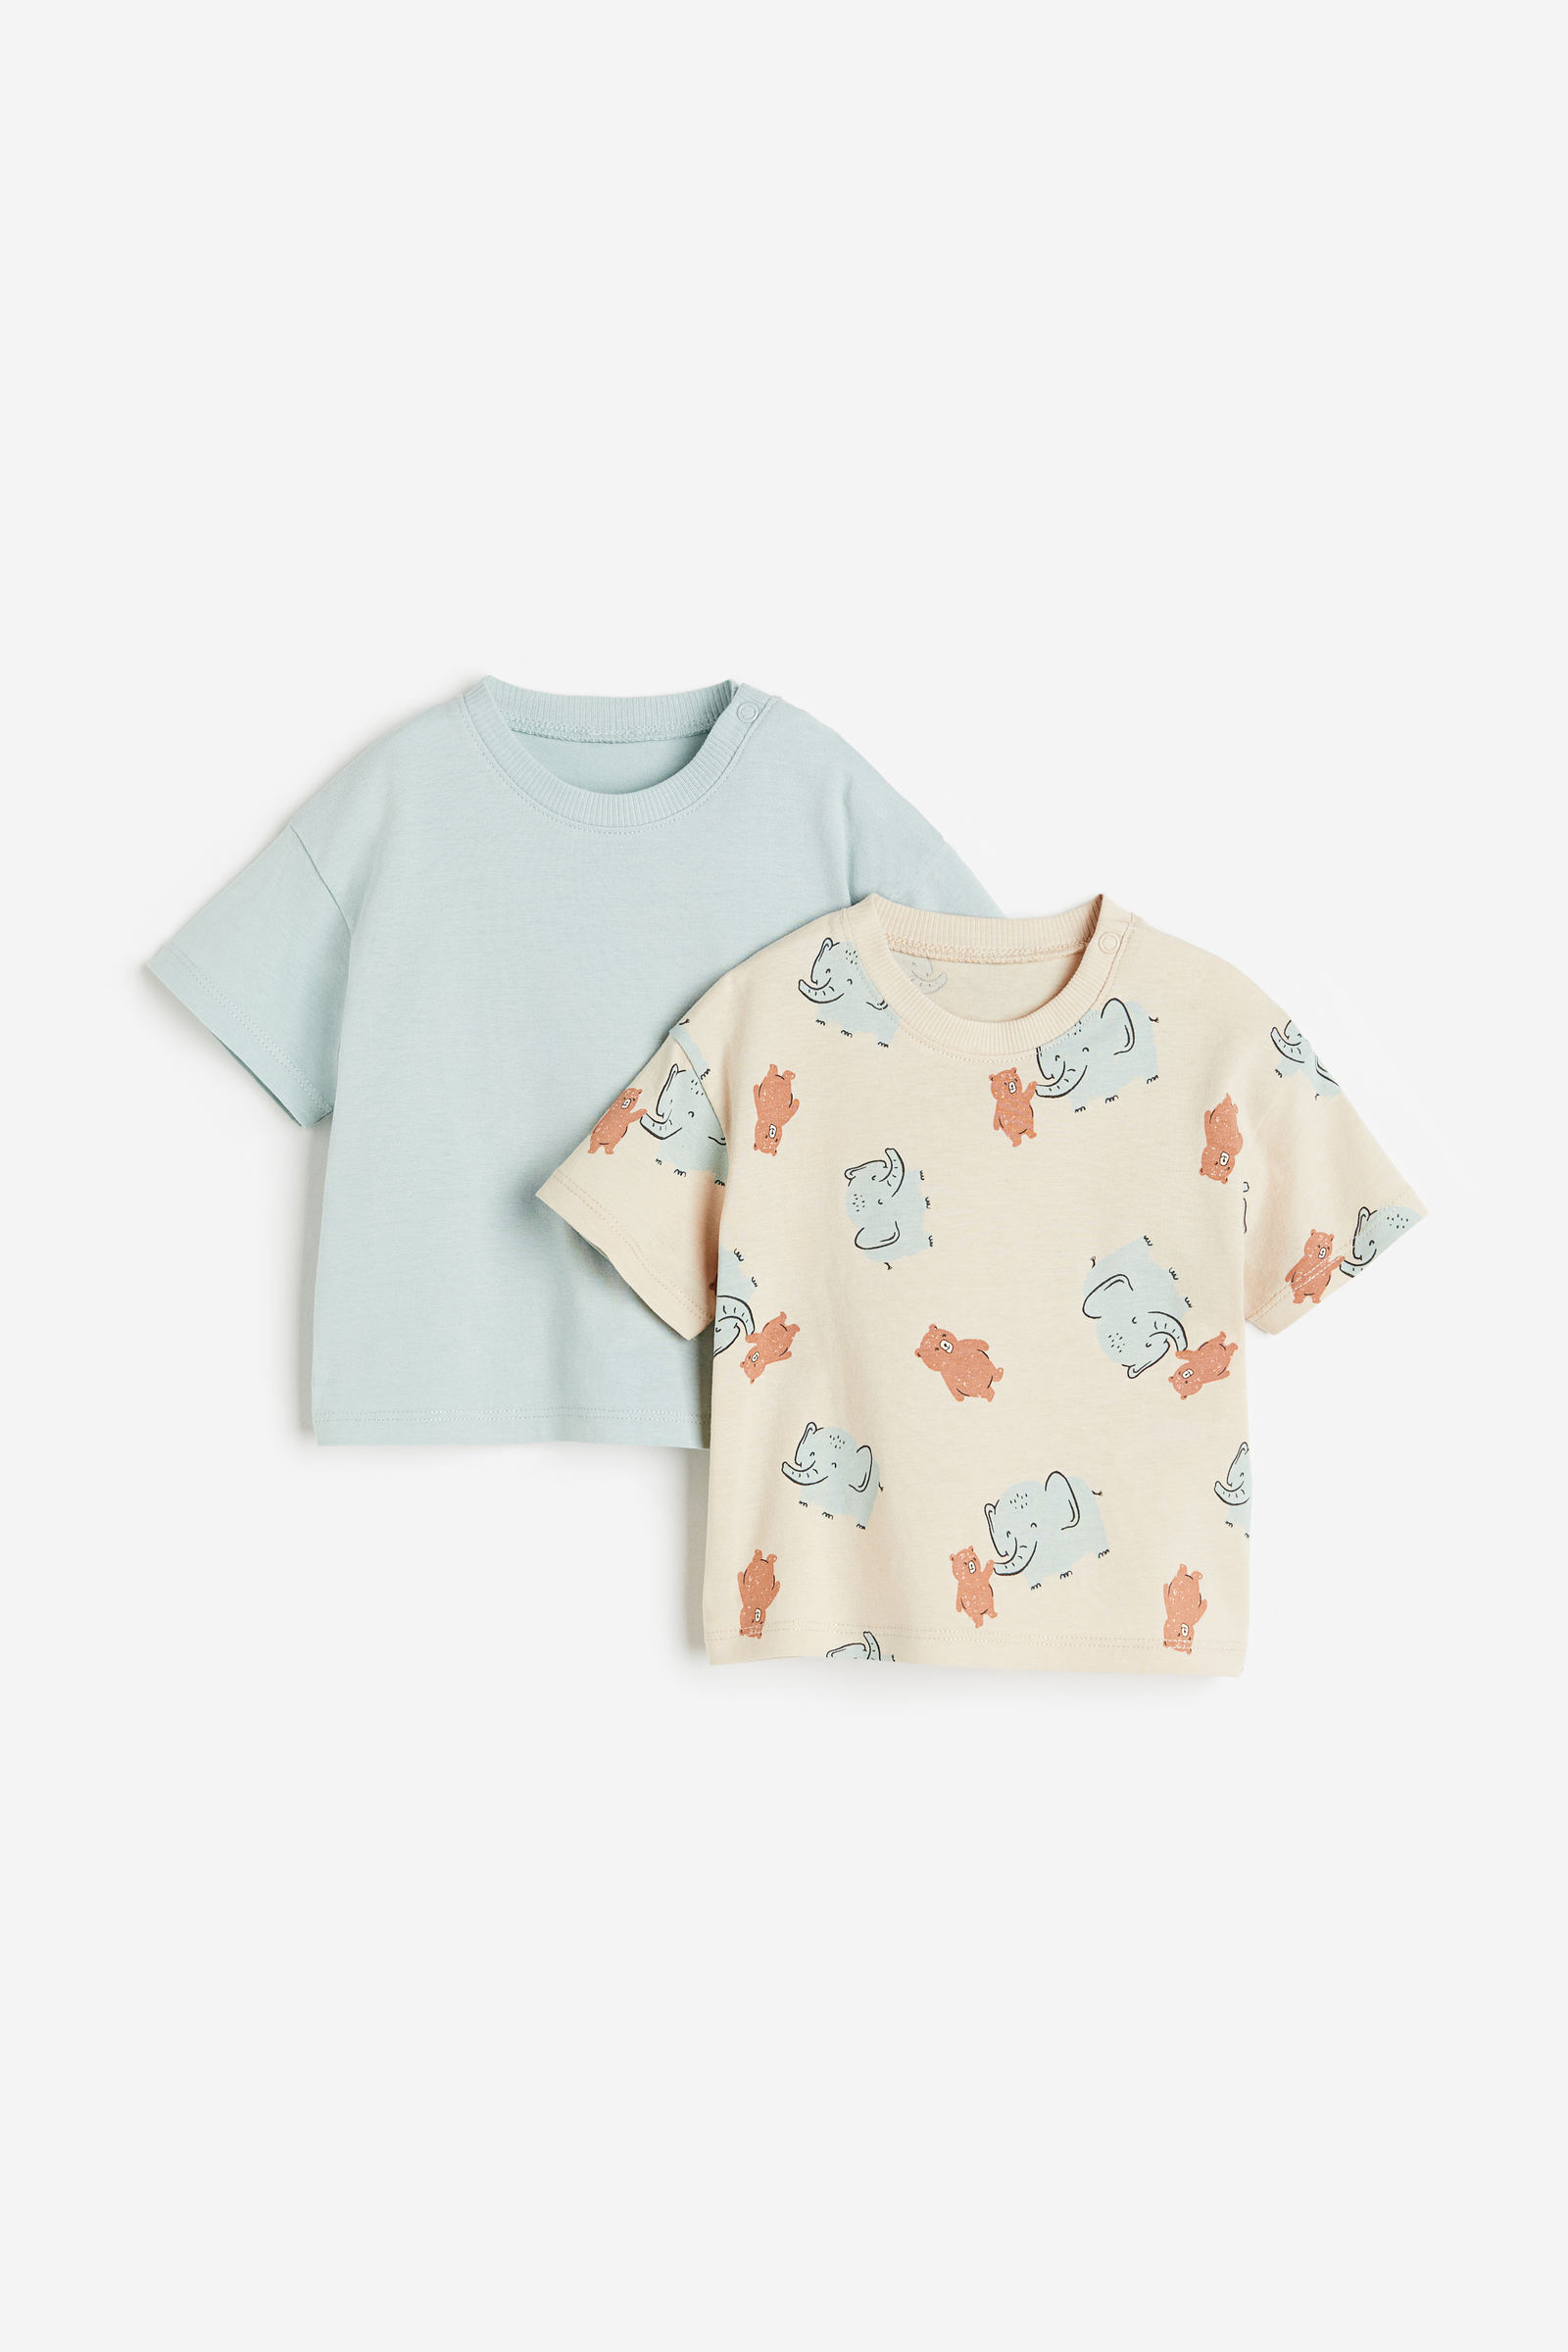 Camisetas, Blusas y | Bebés - H&M CO